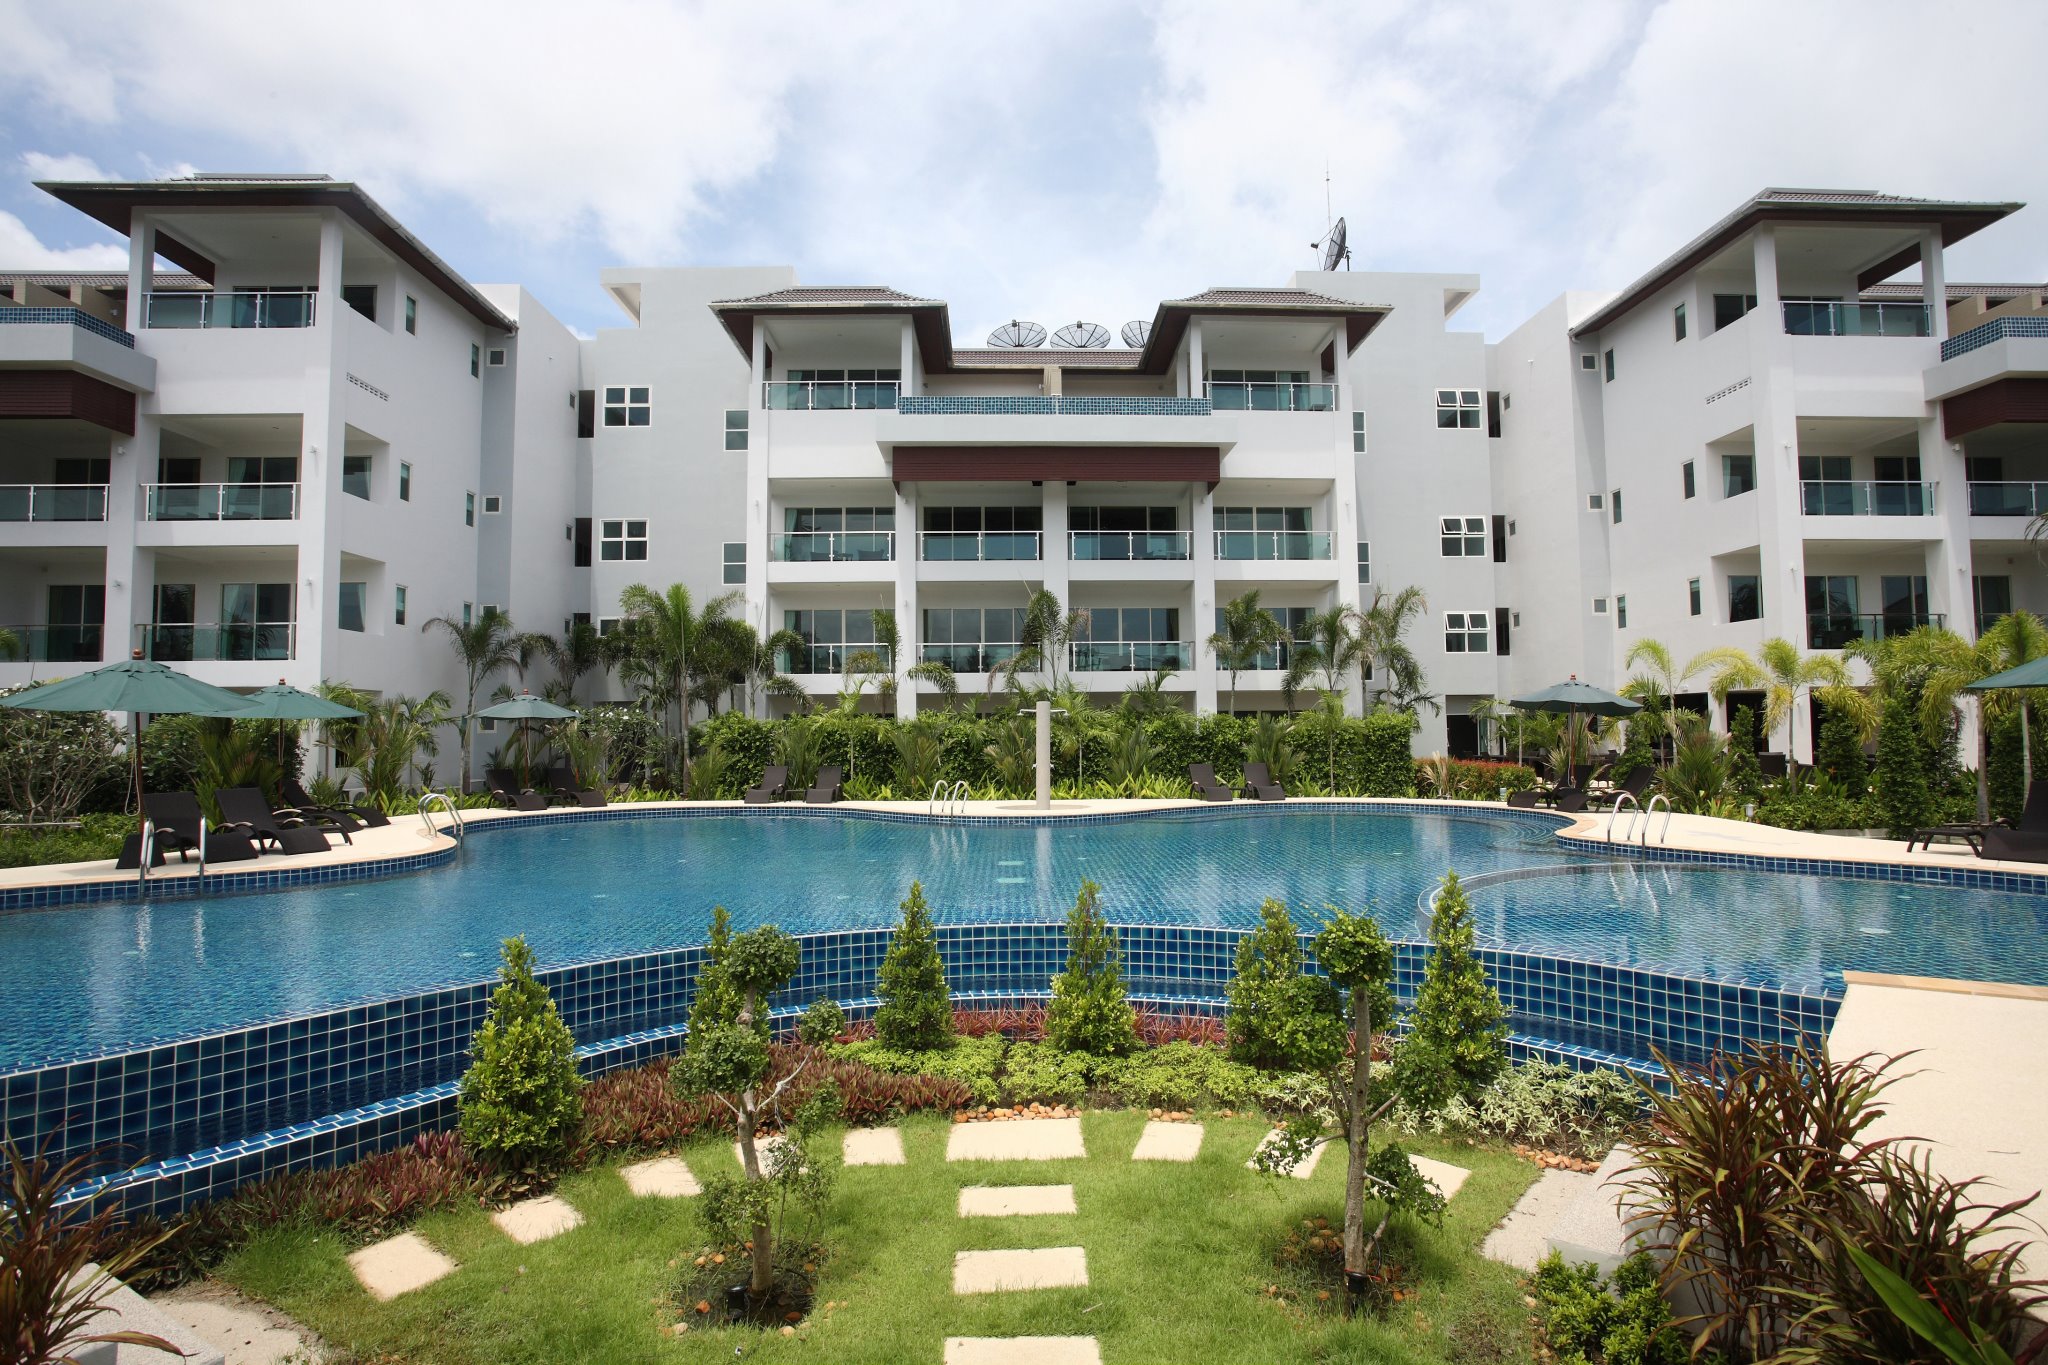 1 bedroom apartment inside pool complex in Bangtao